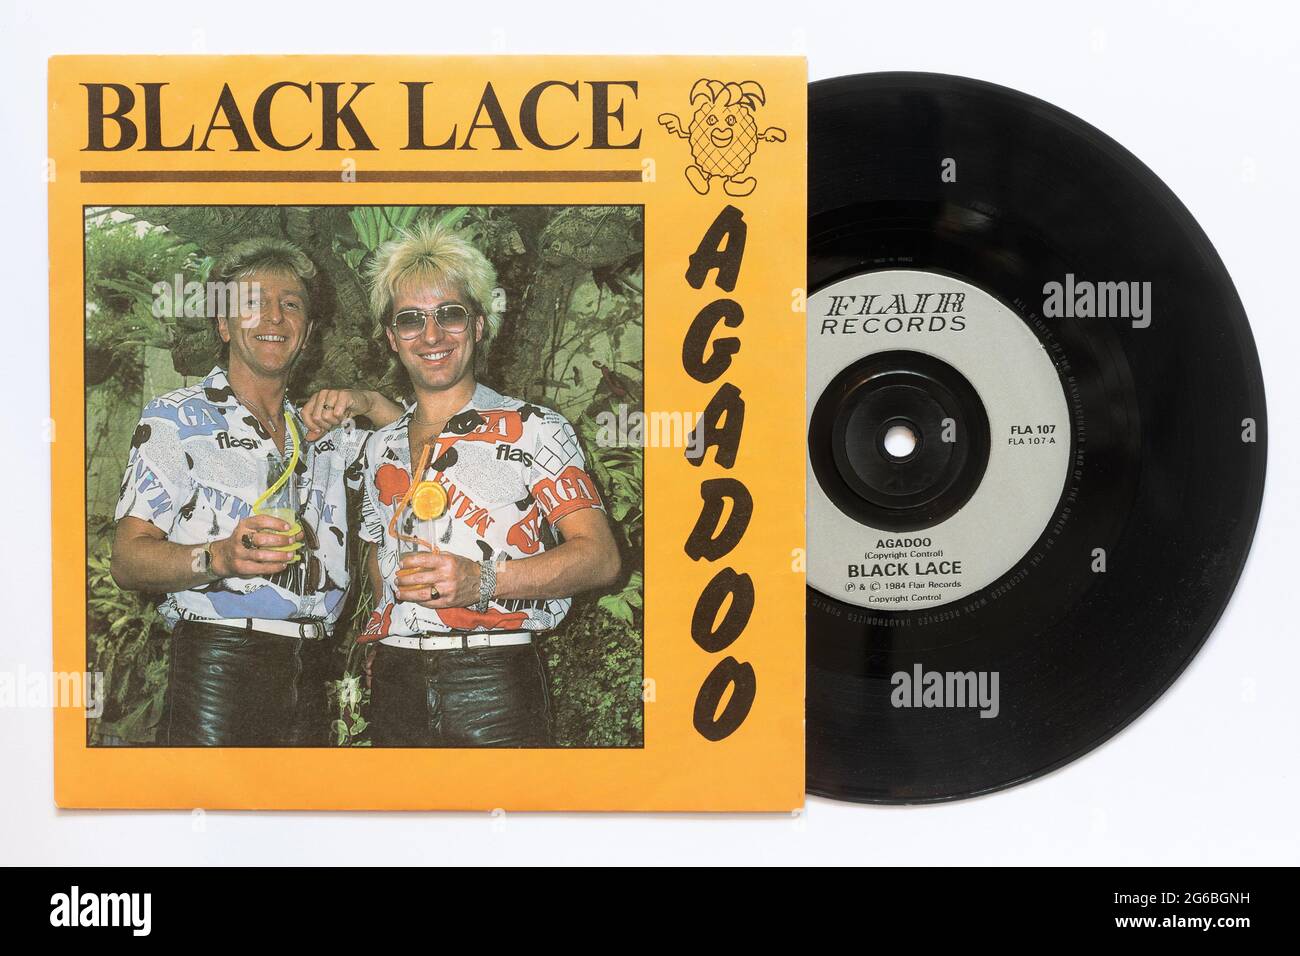 Agadoo par Back Lace, une photo de la 7' single vinyle 45 tr/min record dans la pochette photo Banque D'Images